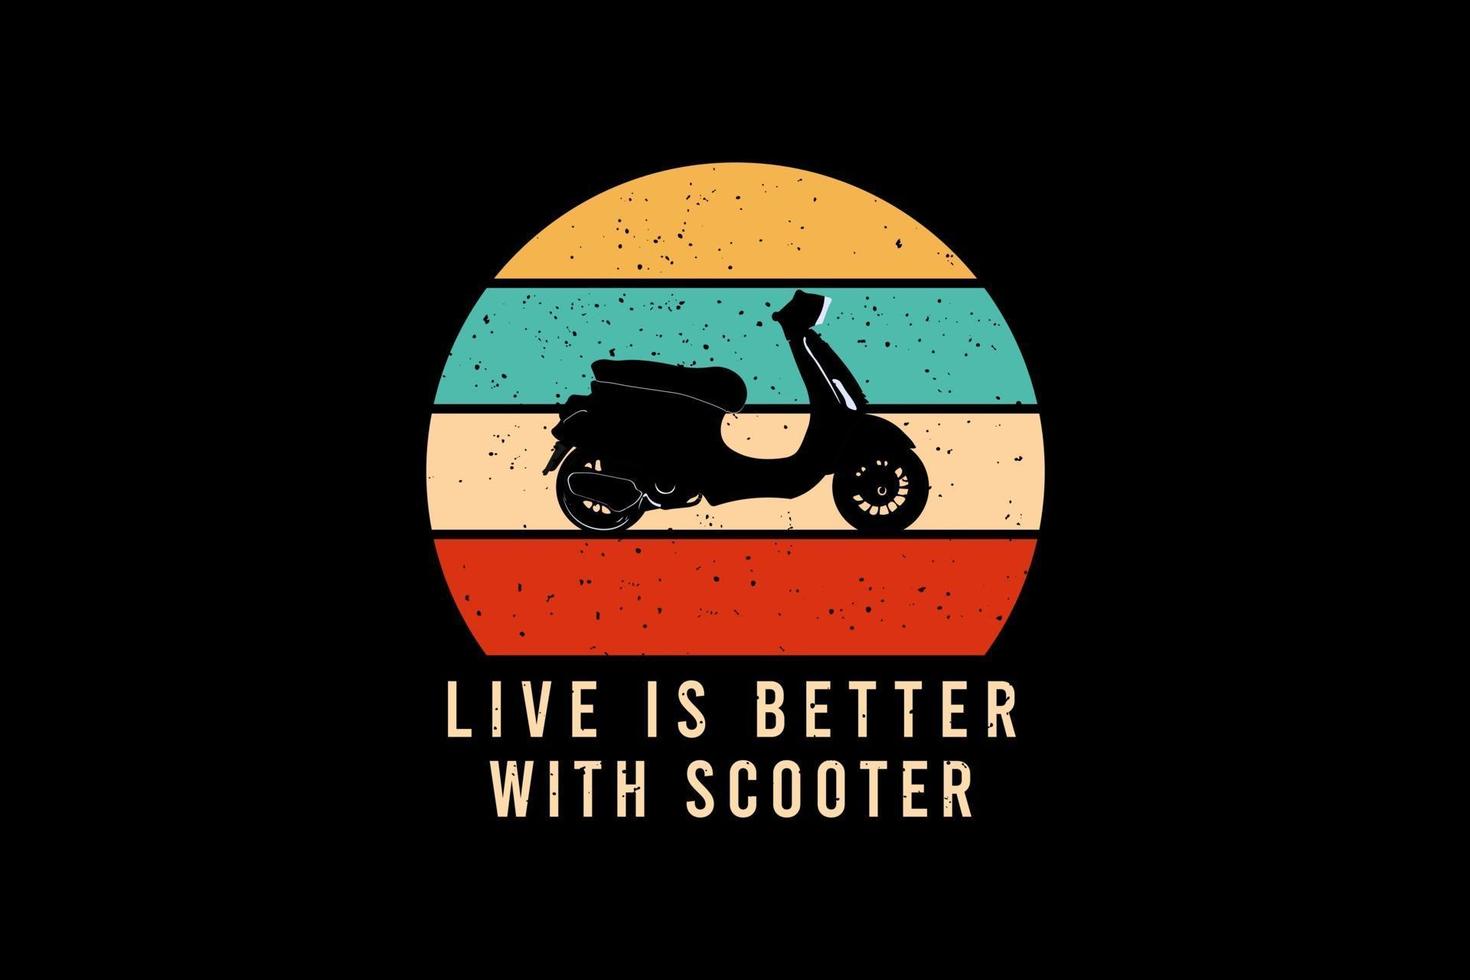 live is beter met scooter, t-shirt merchandise mockup vector